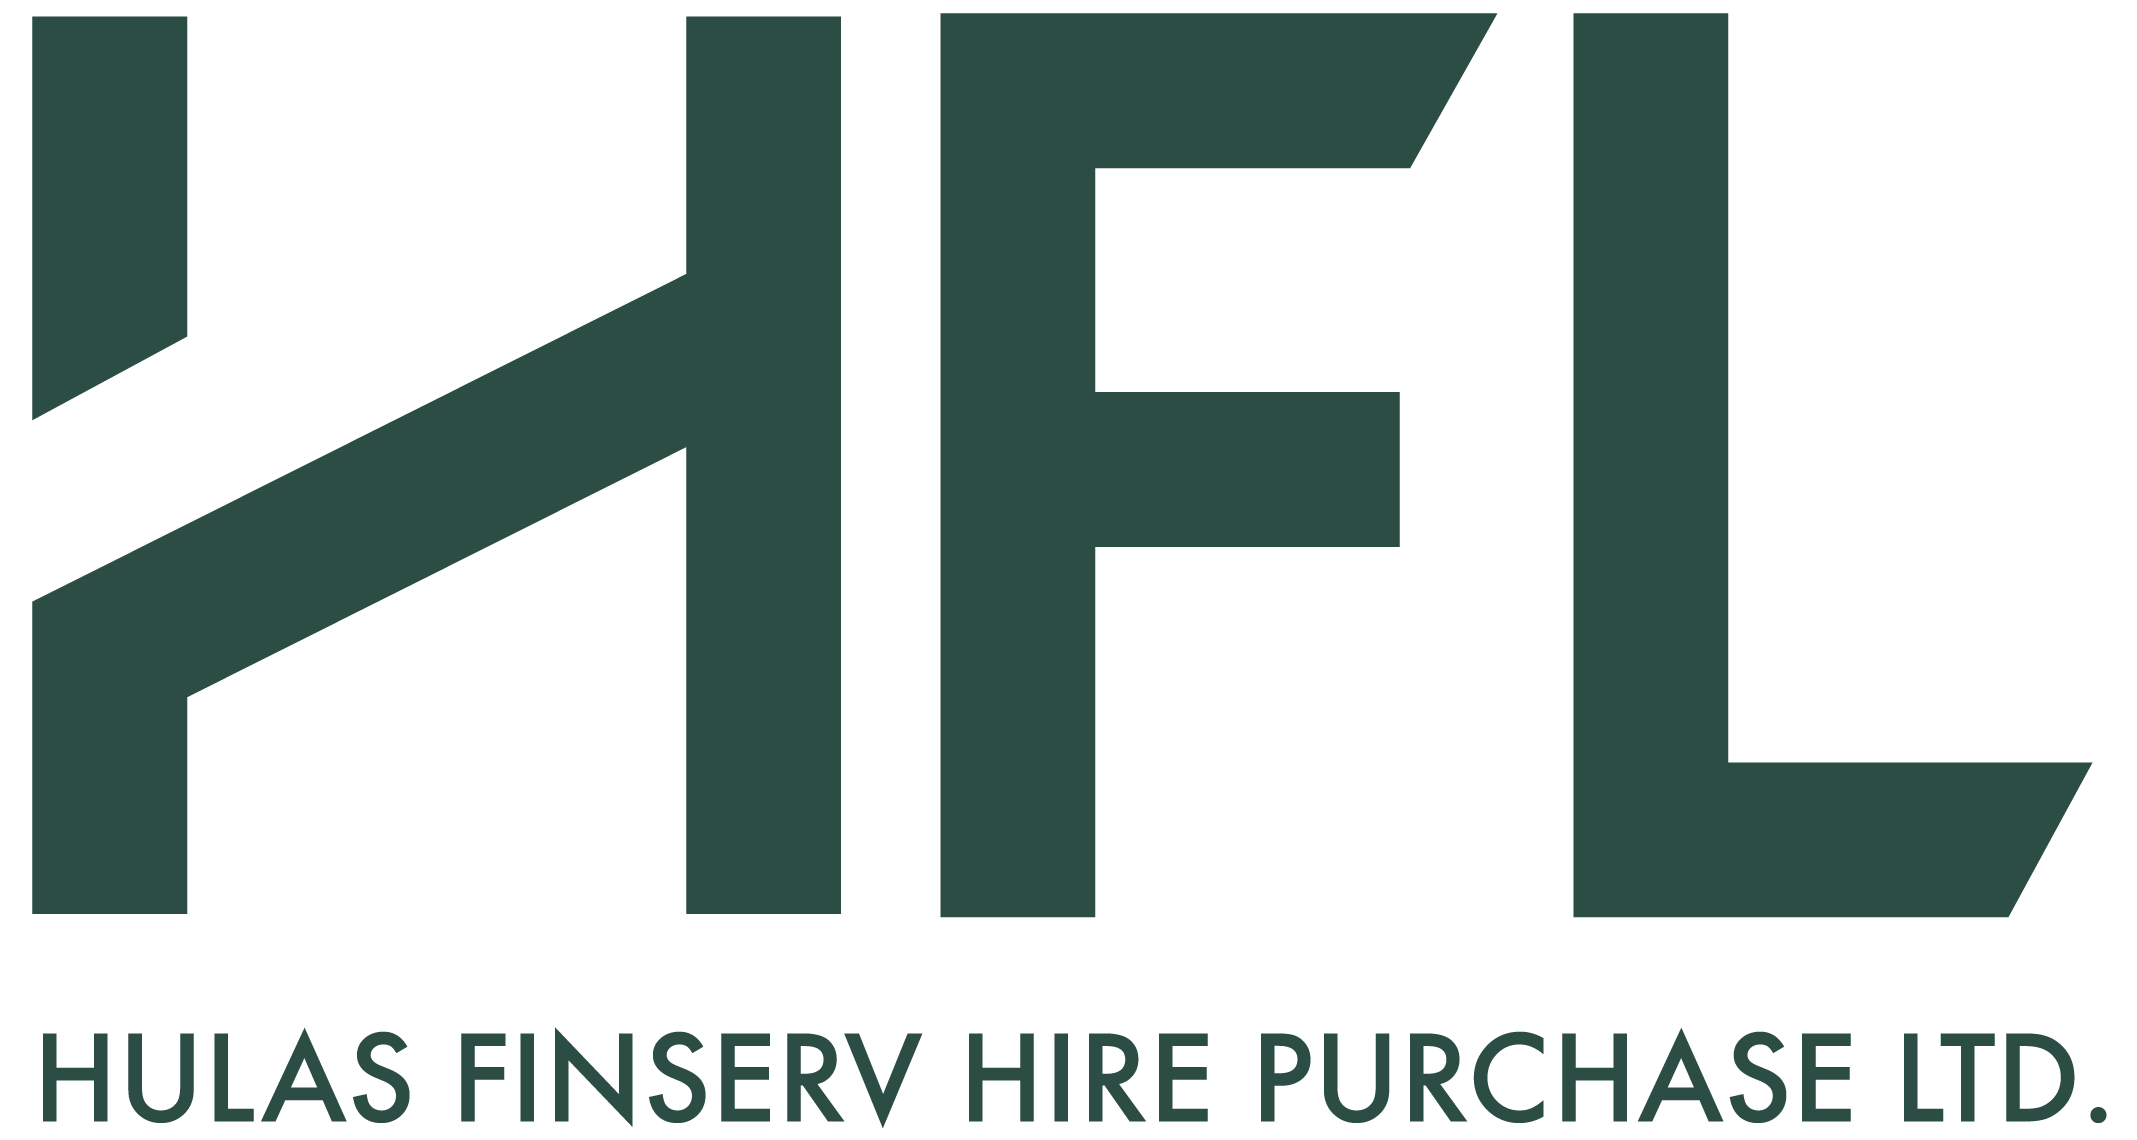 Hulas Fin Serve Logo